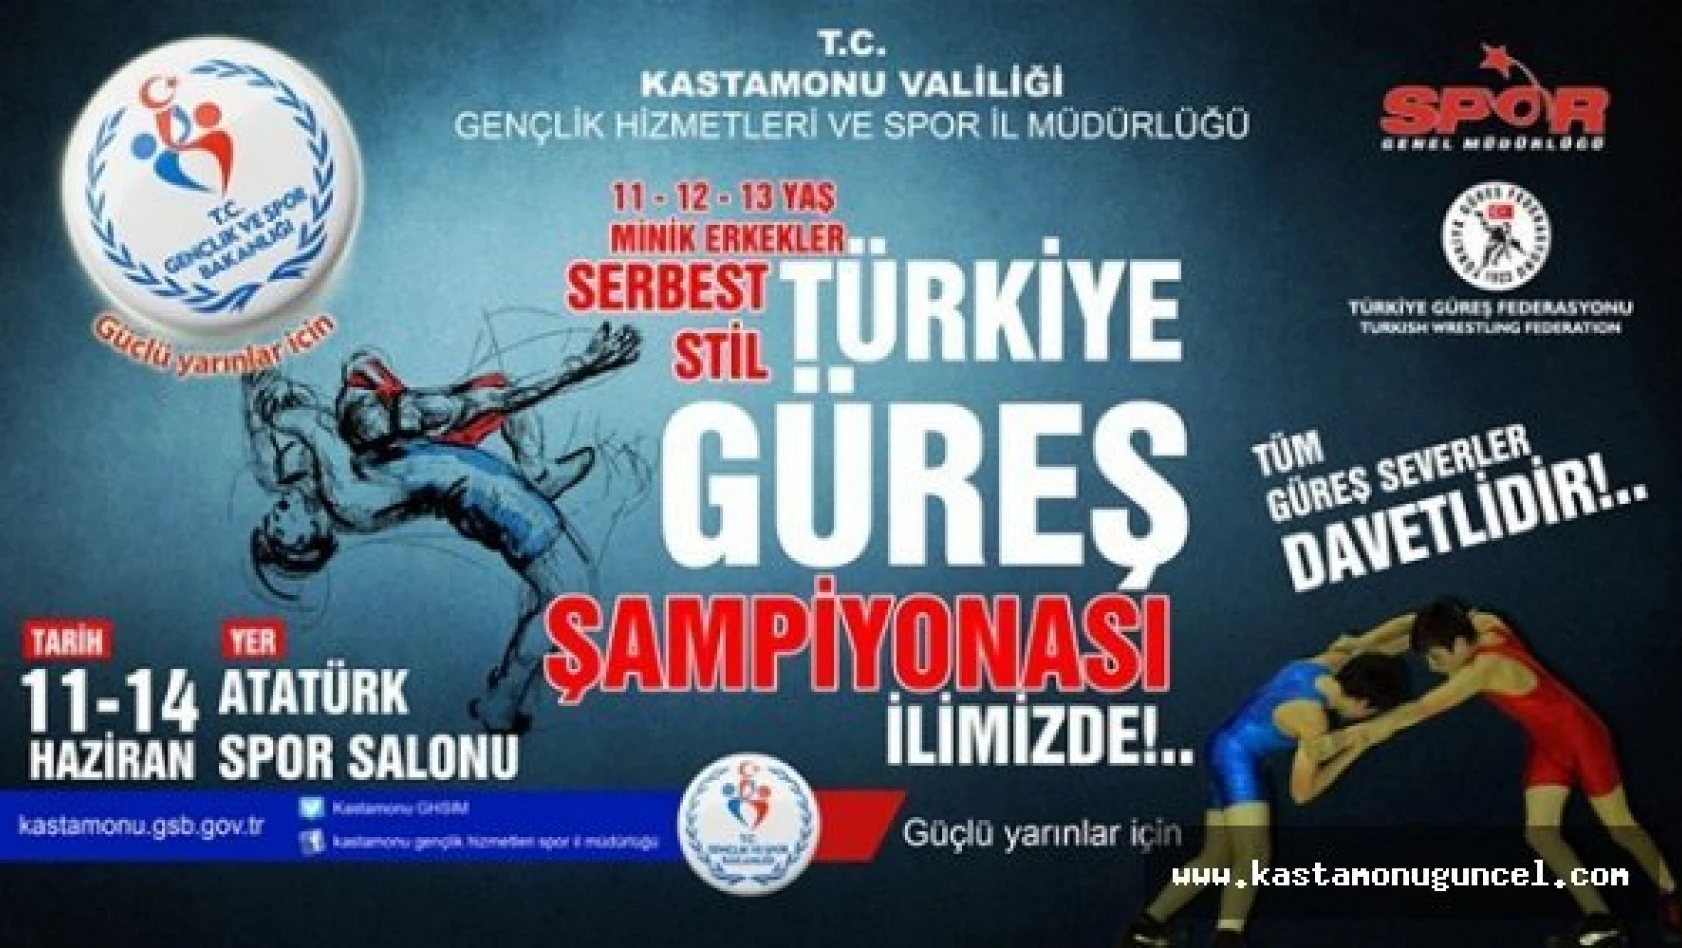 Minik Erkekler Türkiye Güreş Şampiyonası İlimizde